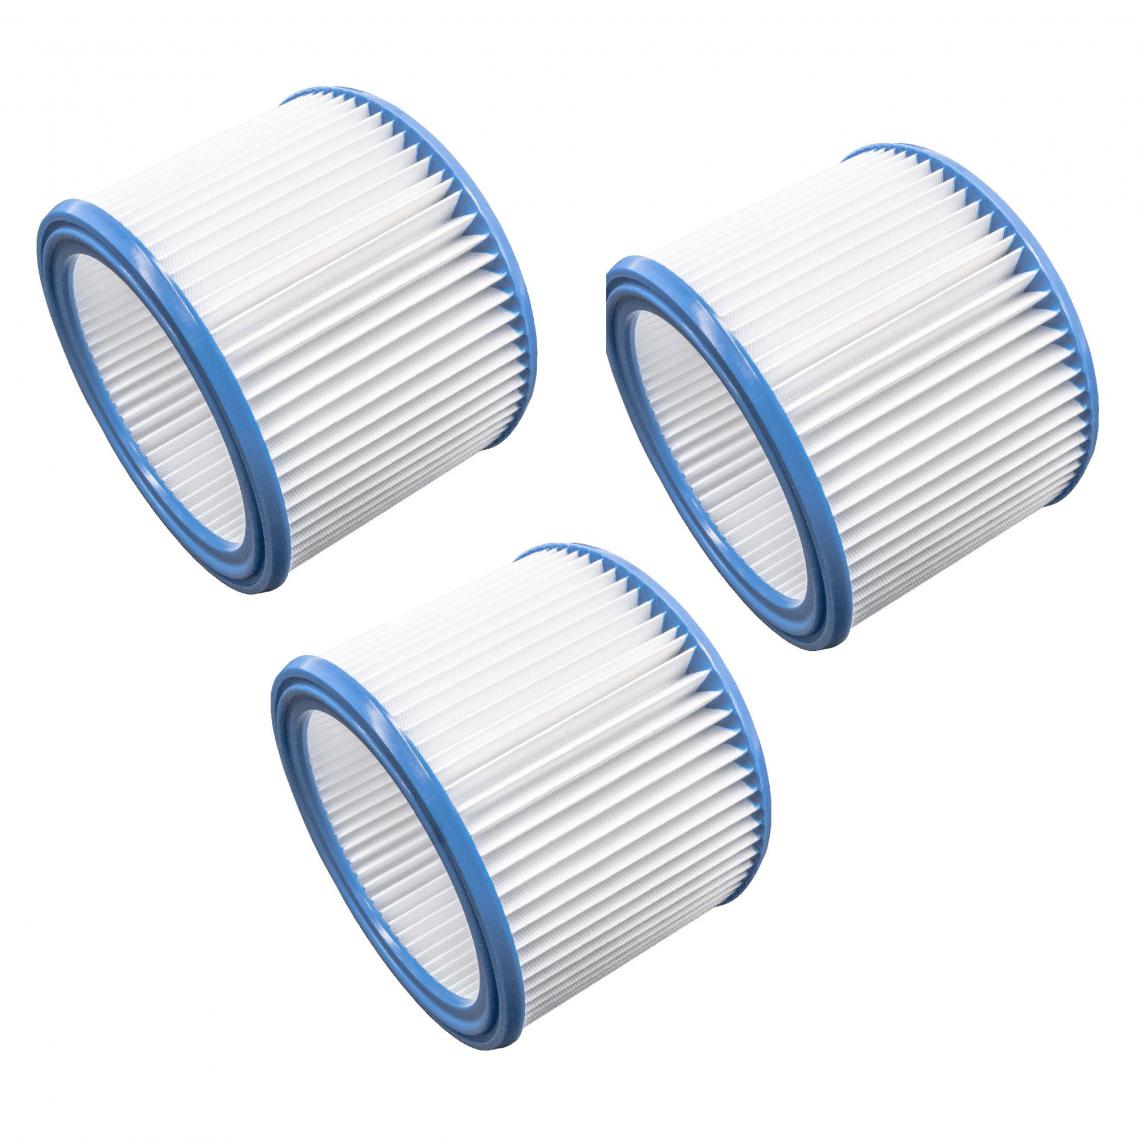 Vhbw - vhbw Set de filtres 3x Filtre plissé compatible avec Nilfisk Aero 21-21 PC Inox, 25-11, 25-21 aspirateur à sec ou humide - Filtre à cartouche - Accessoire entretien des sols